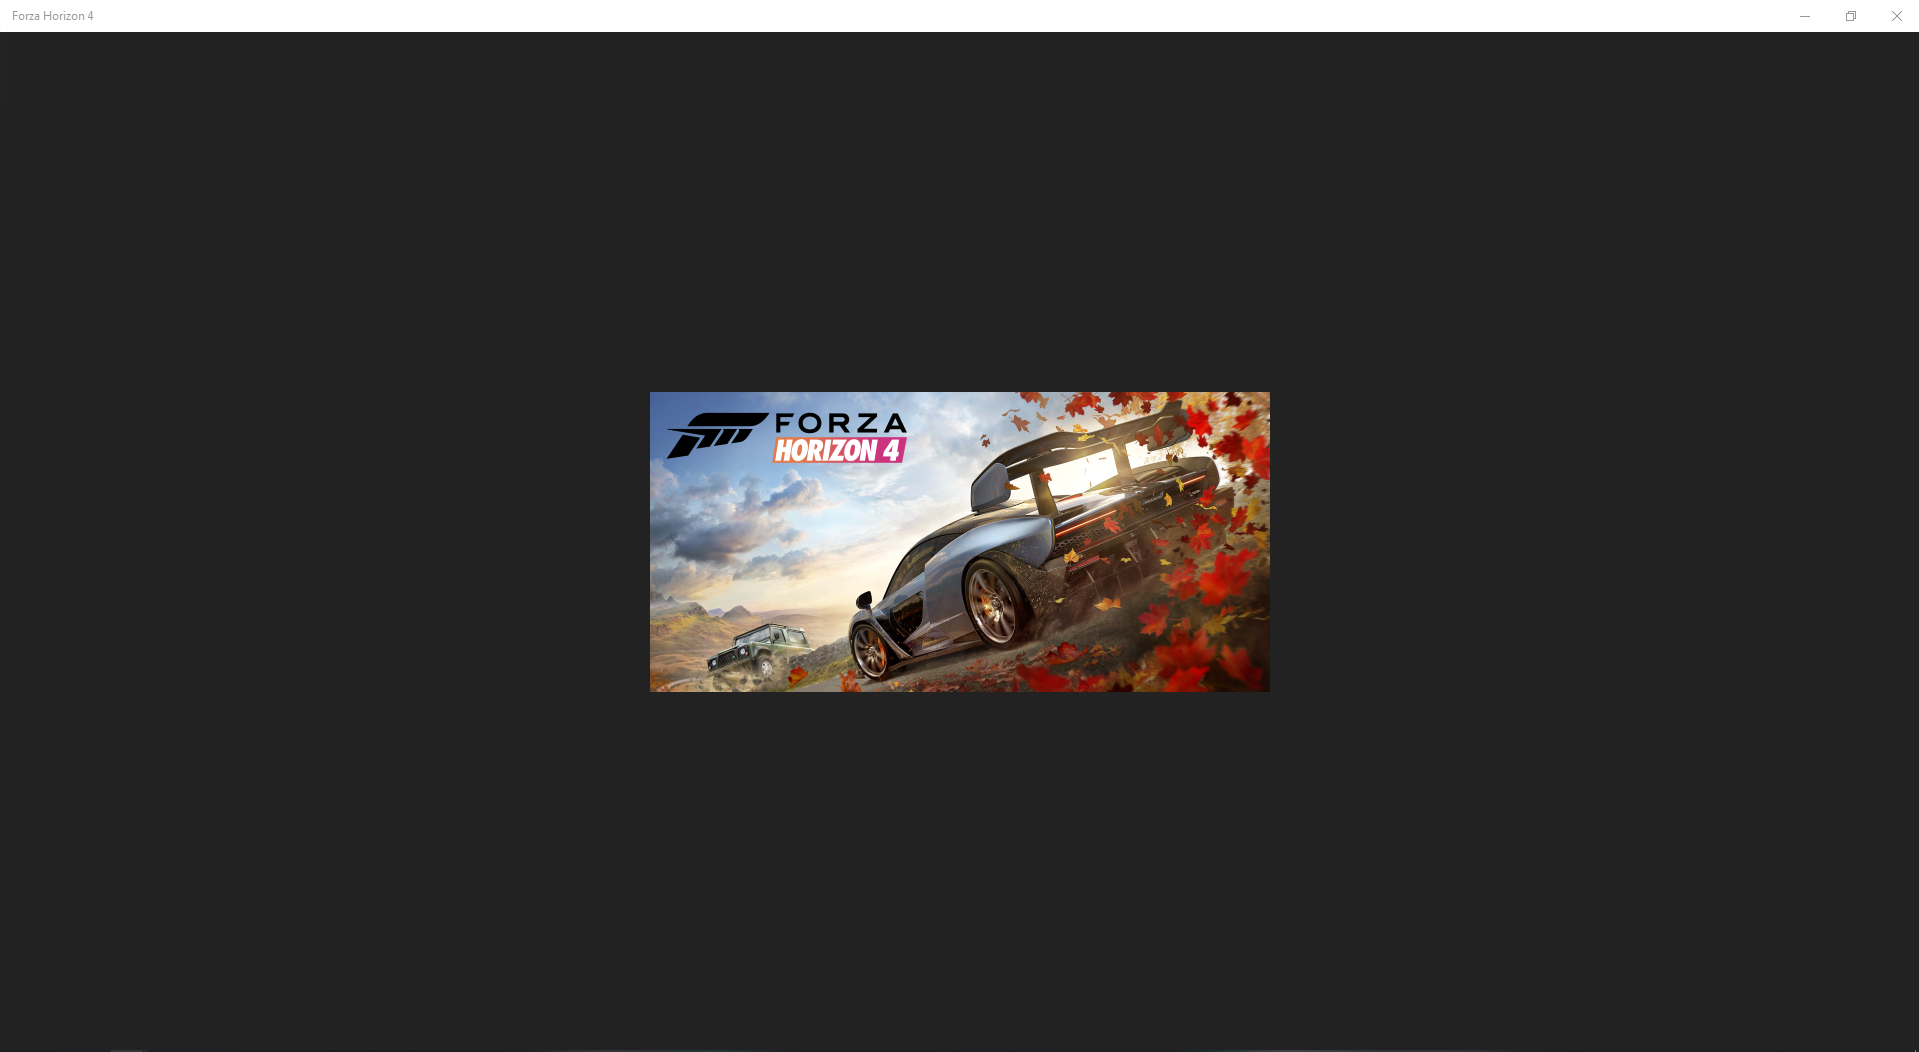 Форза хорайзен 4 вылетает. Крашится Forza Horizon 4. Forza Horizon 4 ошибка при запуске. Вылетает Форза 4. Forza Horizon 4 вылетает при запуске сразу после заставки.